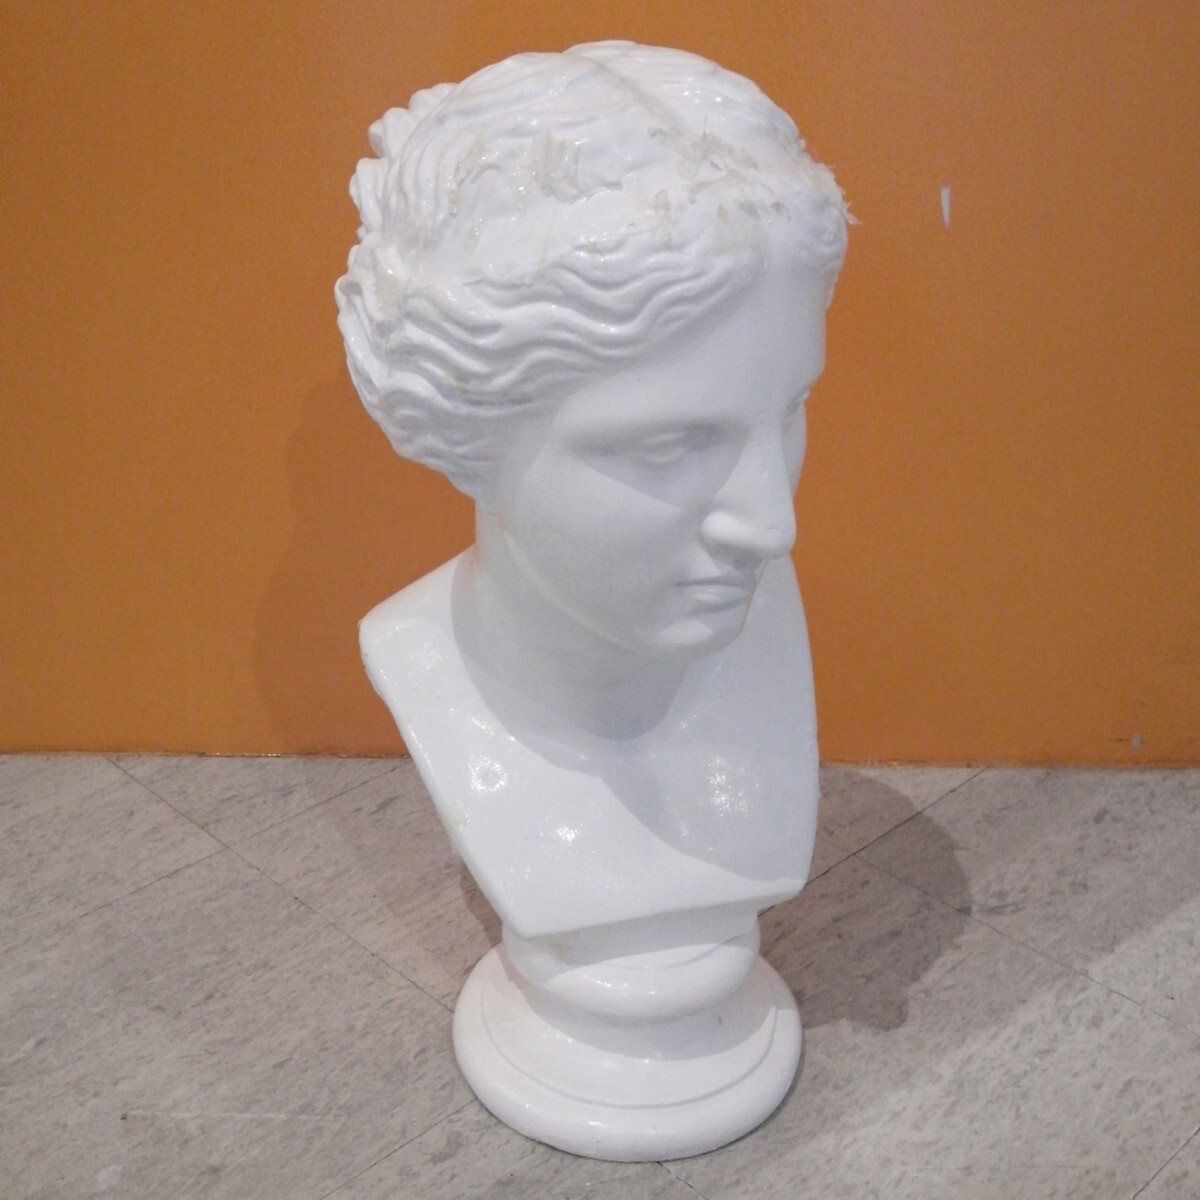 石膏像 胸像 デッサン 美術 ミロのヴィーナス - 美術品